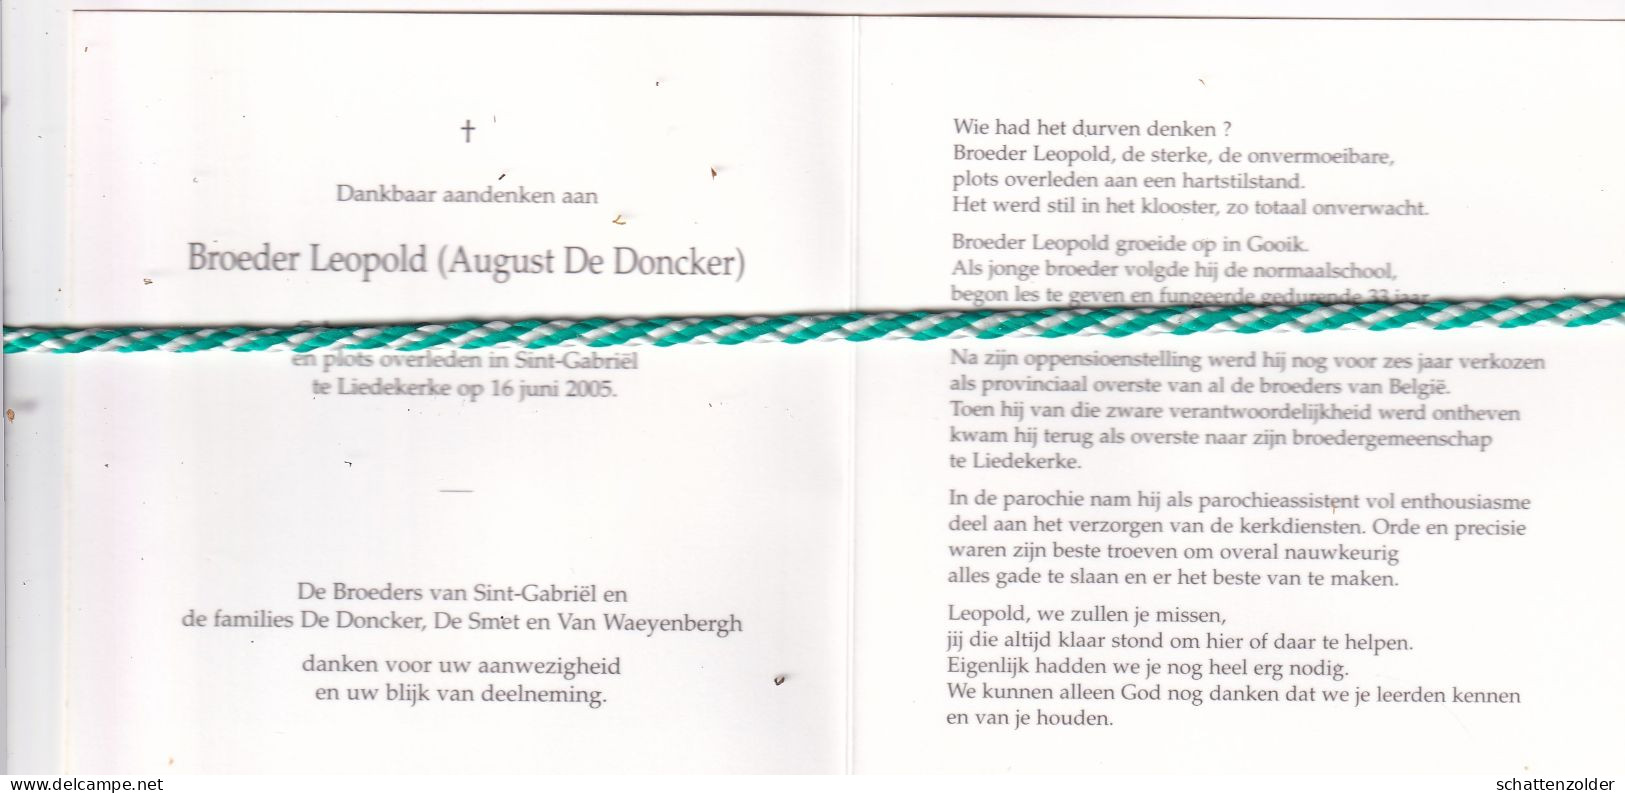 Broeder Leopold (August De Doncker), Gooik 1931, Liedekerke 2005. Foto - Décès